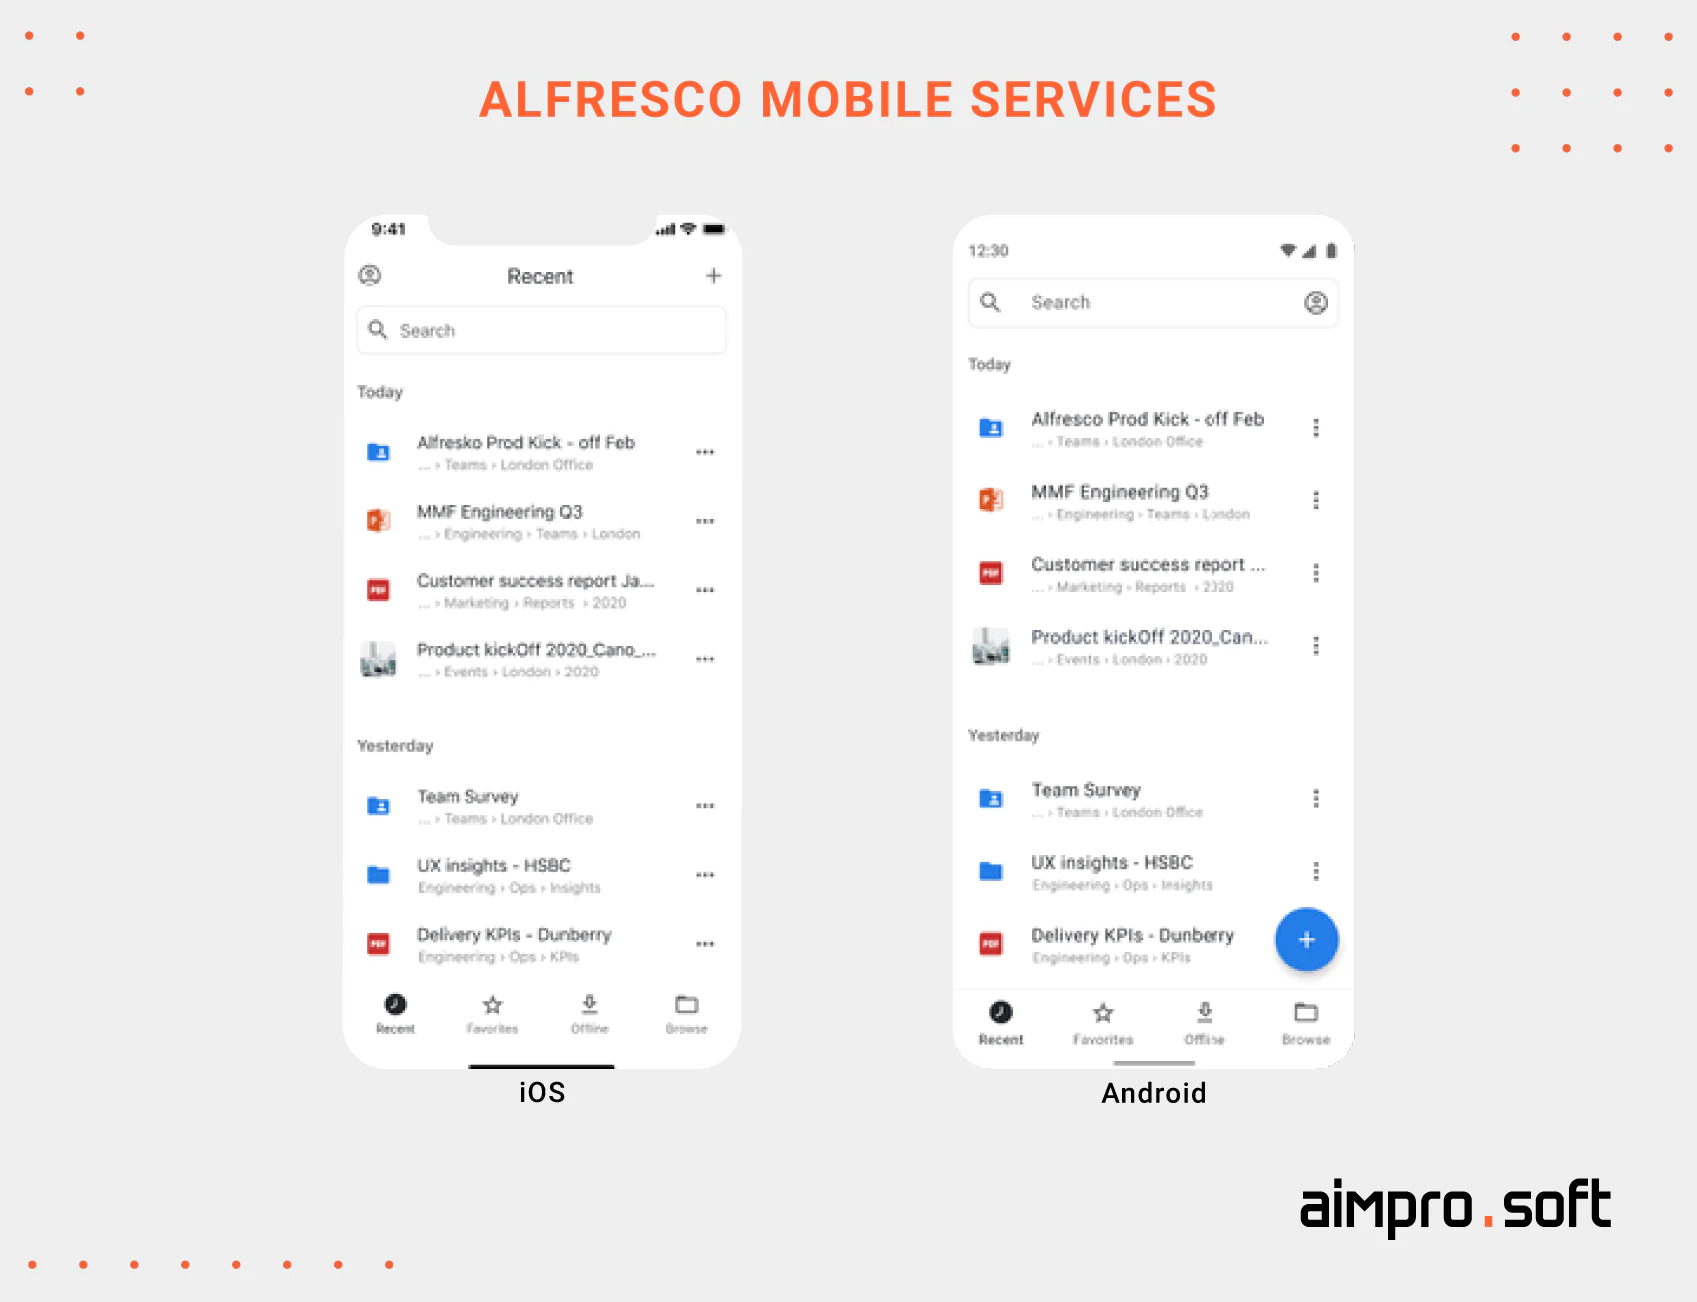 Alfresco Mobile Services